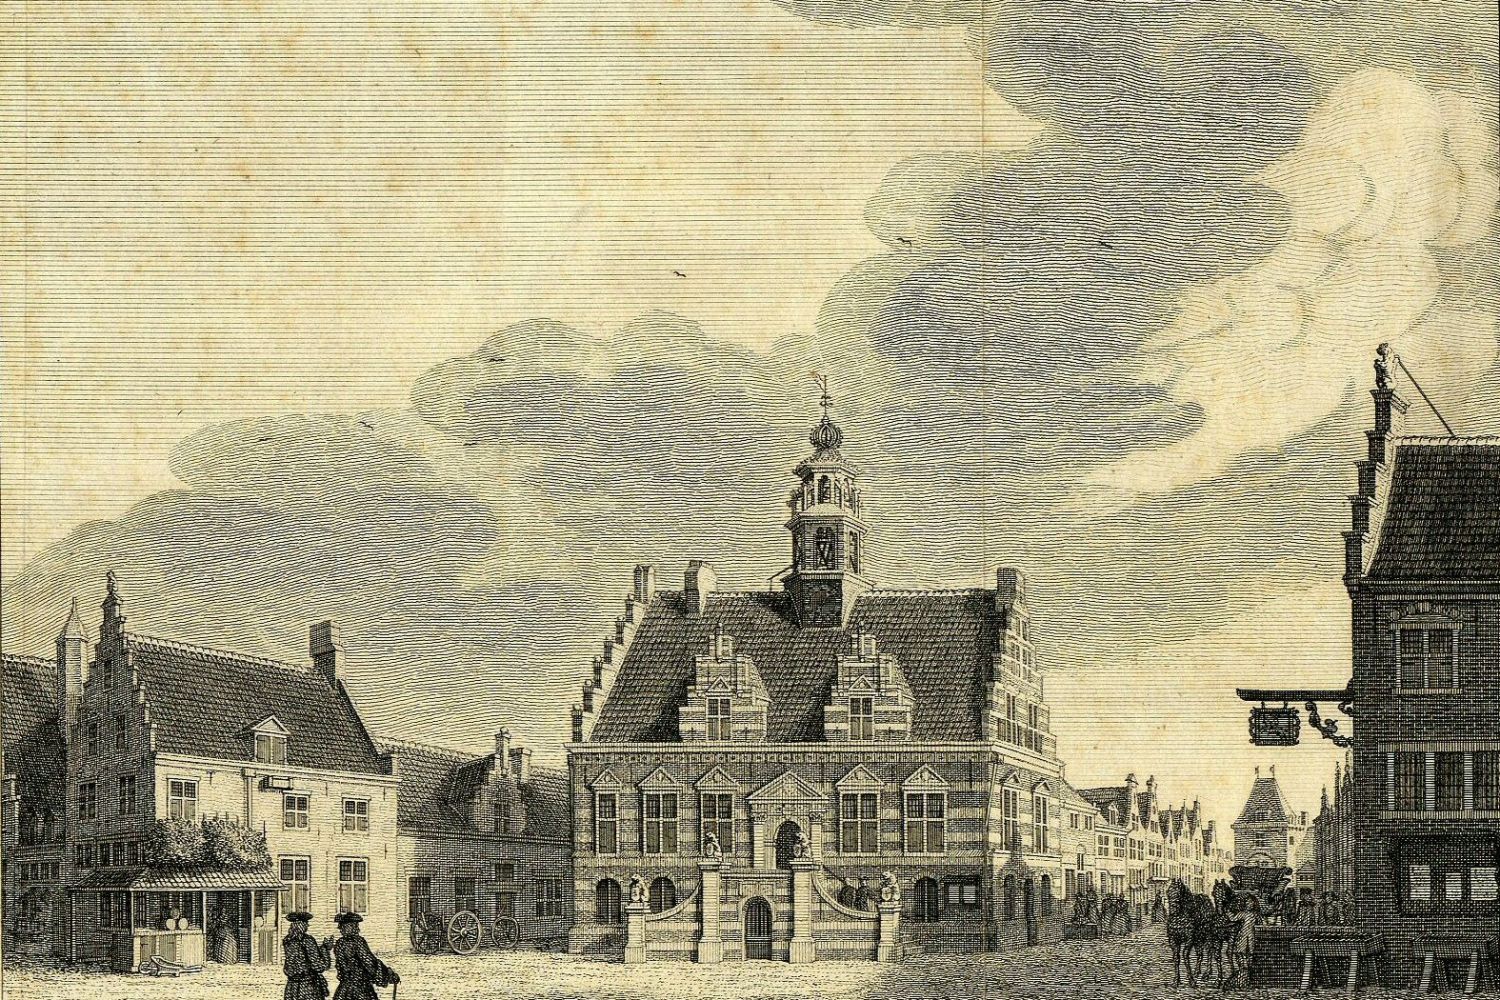 Gravure van het stadhuis van IJsselstein, gebouwd in renaissancestijl. Het gebouw heeft trapgevels en in het midden een toren. Aan de voorkant is een bordes met aan beide kanten trappen. Op de voorgrond een plein met twee staande personen. Links en rechts zijn andere huizen te zien en rechts twee paarden voor een wagen.